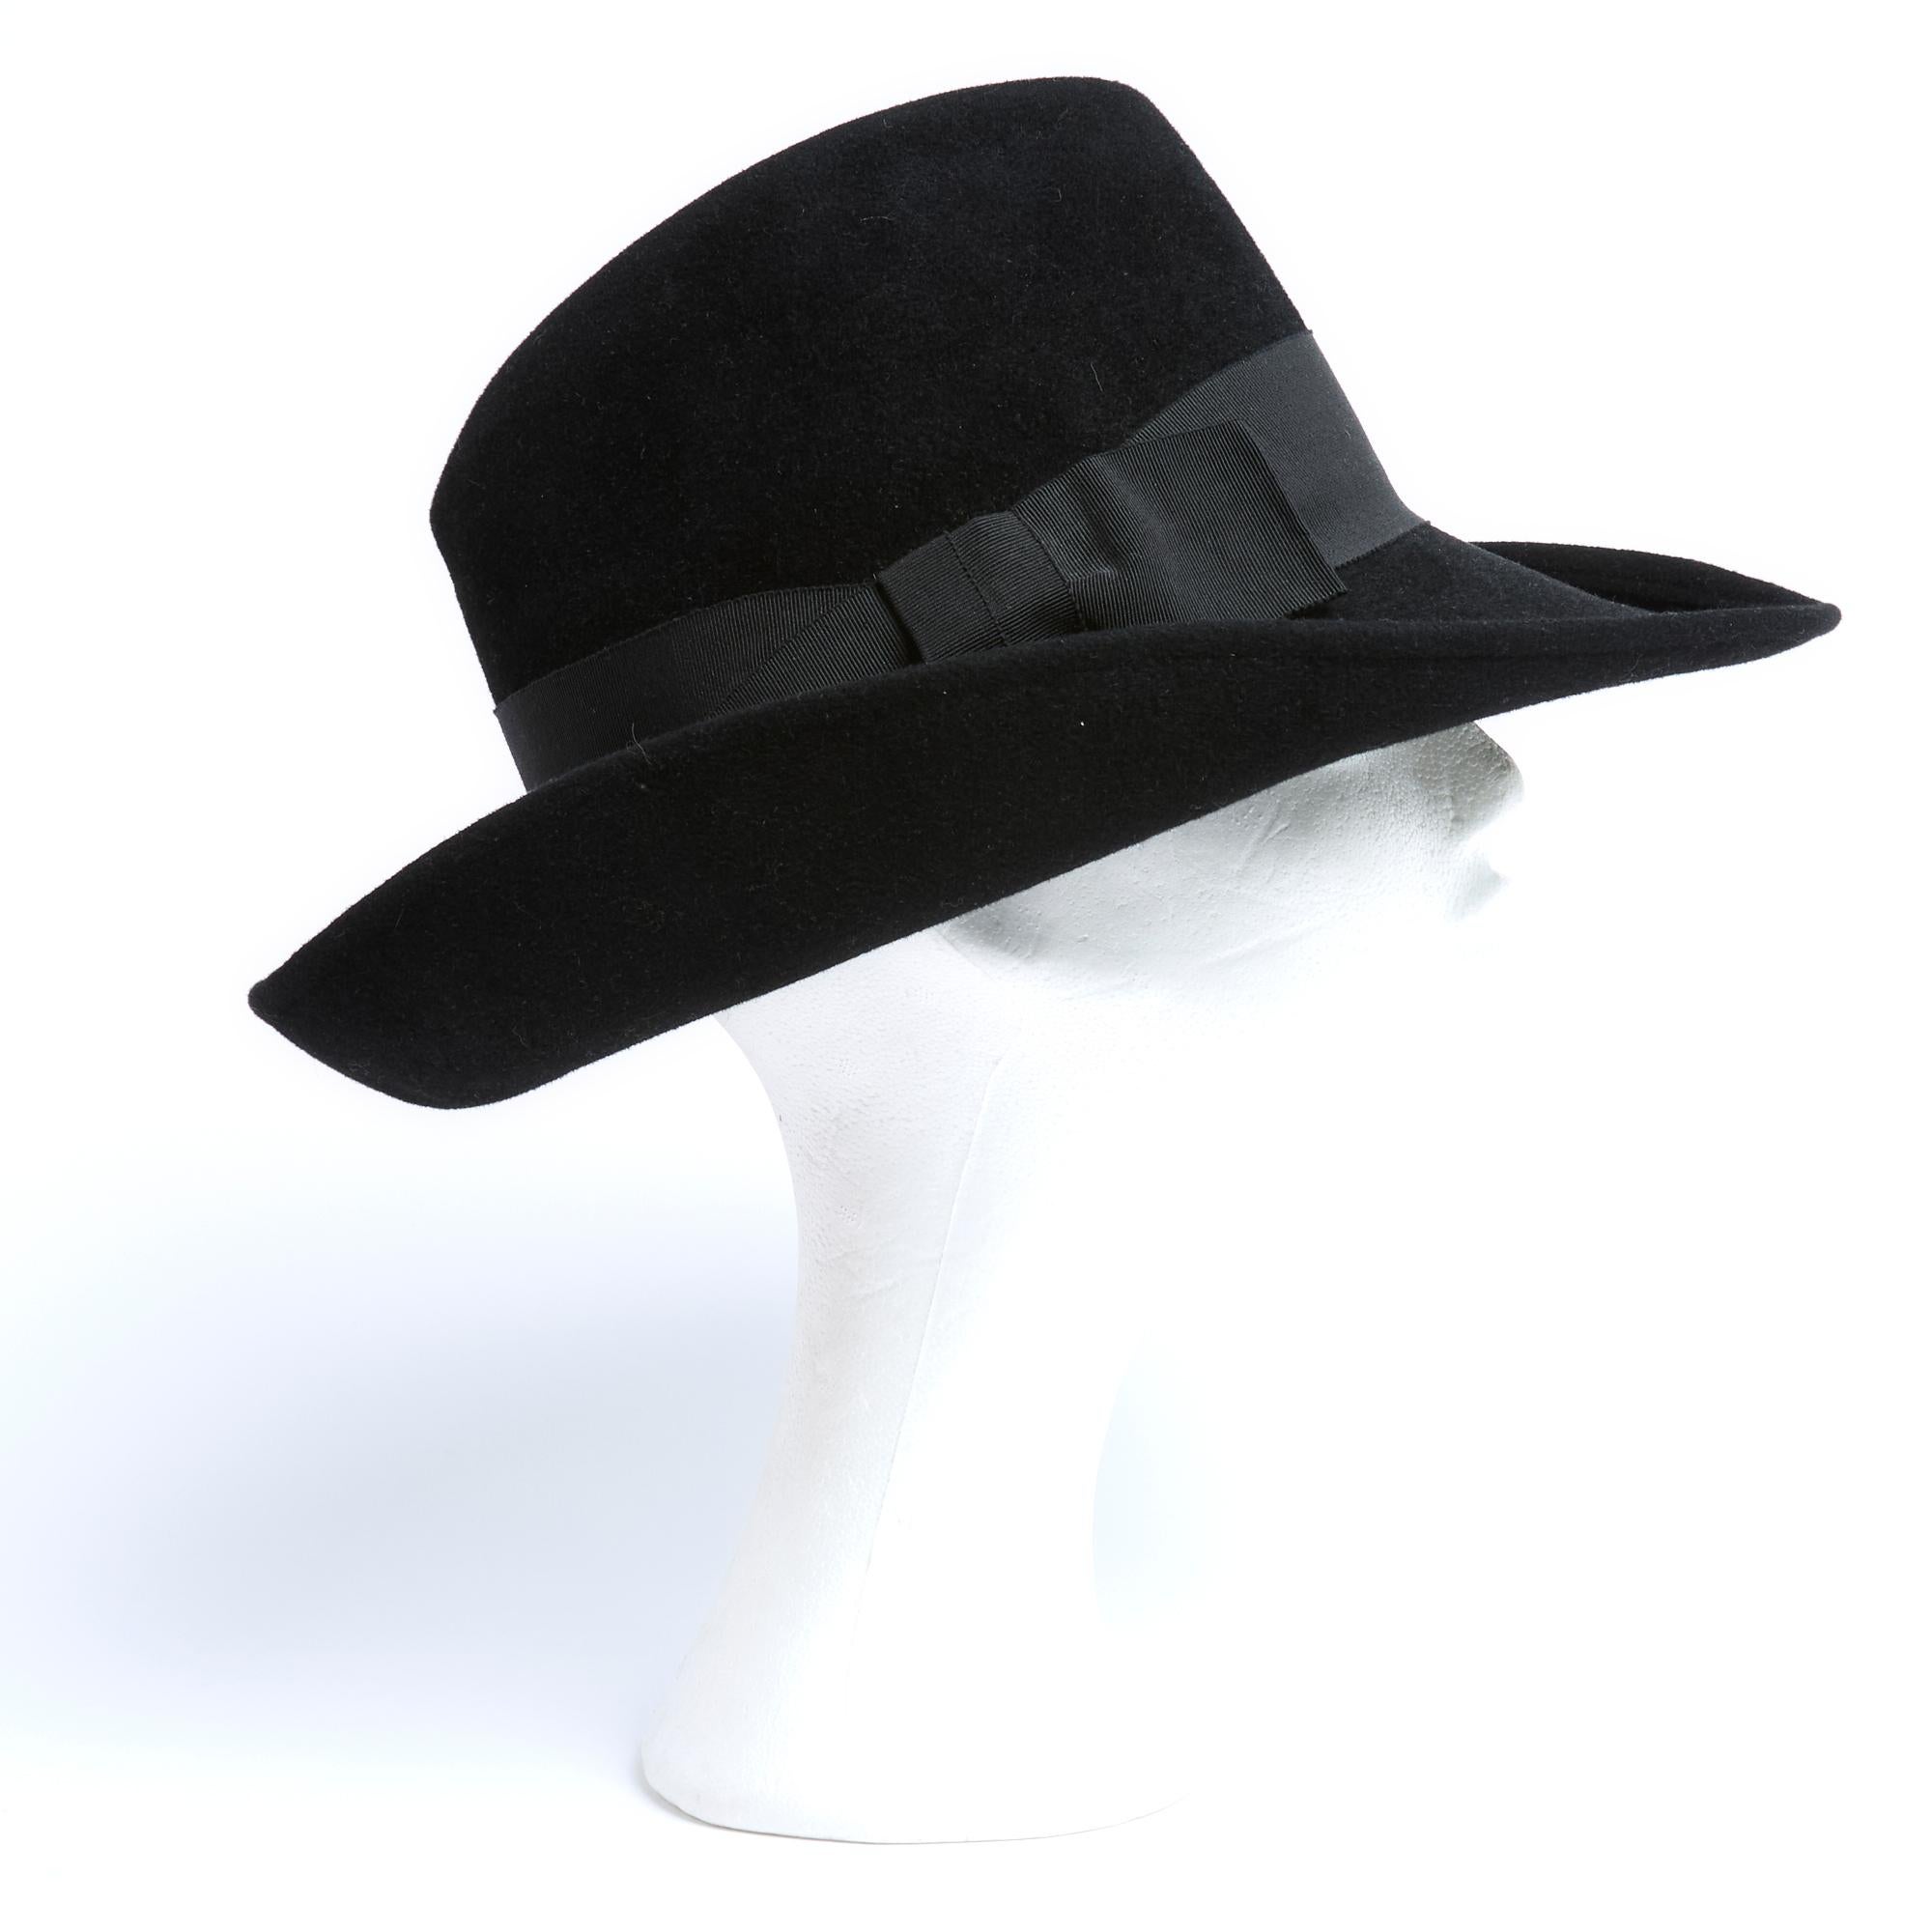 Marie Mercié übergroßer, leicht asymmetrischer Hut im Fedora-Stil aus schwarzem Wollfilz mit breiter Krempe, Band und Schleife aus koordinierter Ripsbandborte. Kein Größenetikett, aber die Beschläge deuten auf L oder einen Kopfumfang von 58 cm hin.